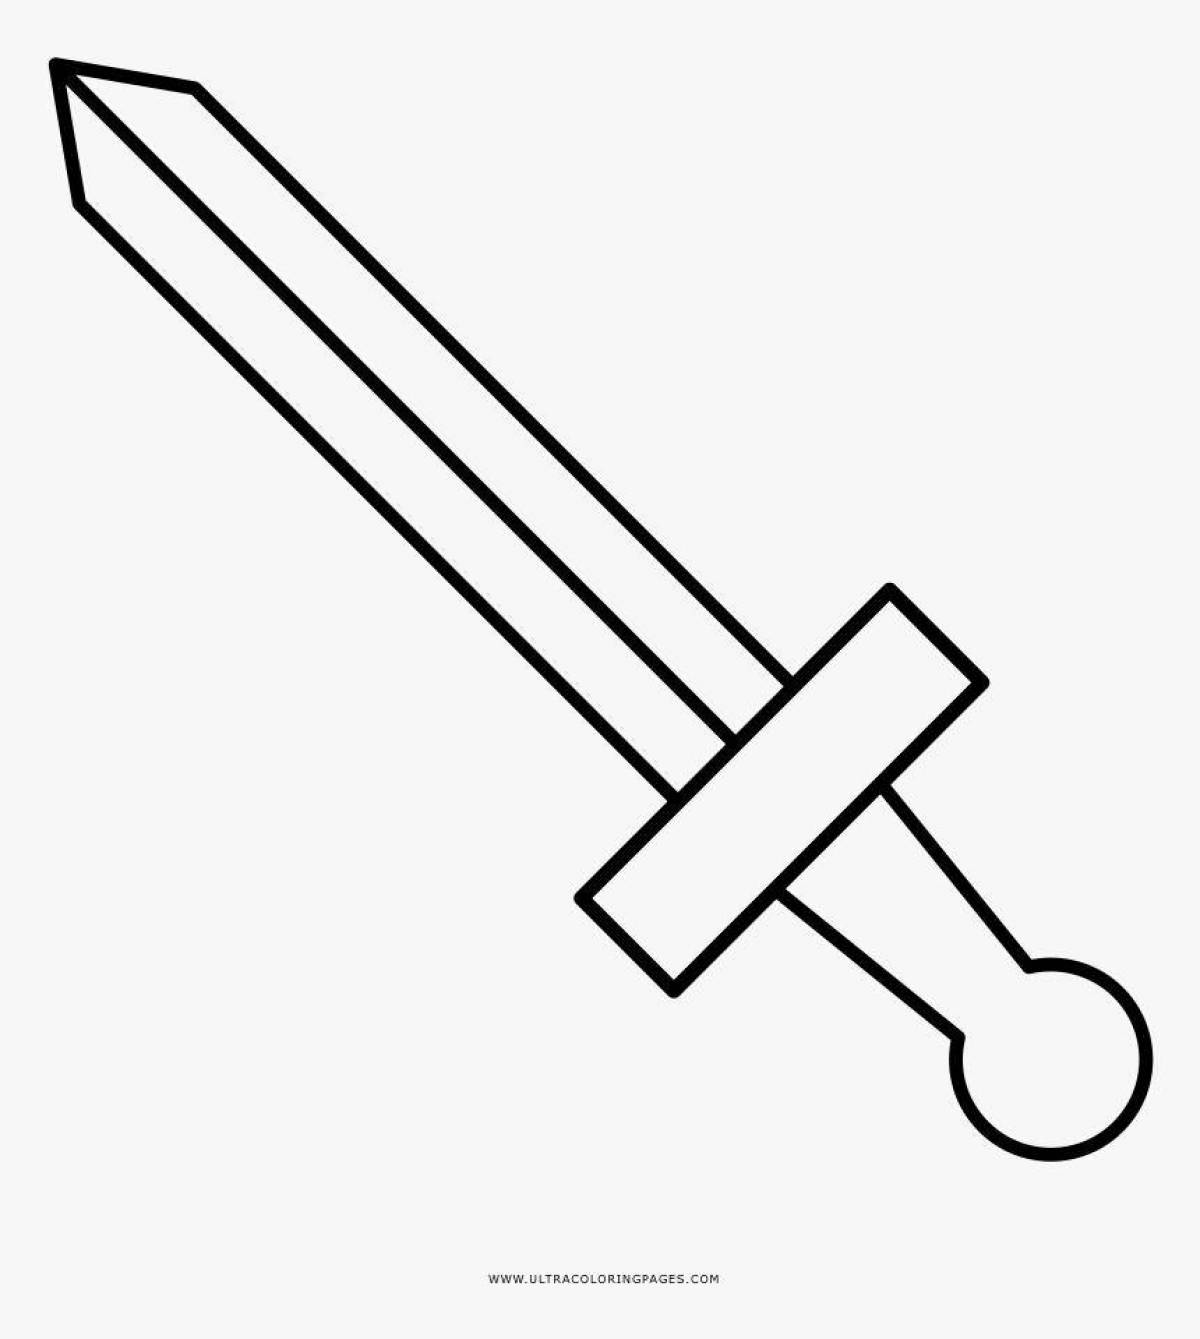 Привлекательная страница раскраски меча для детей